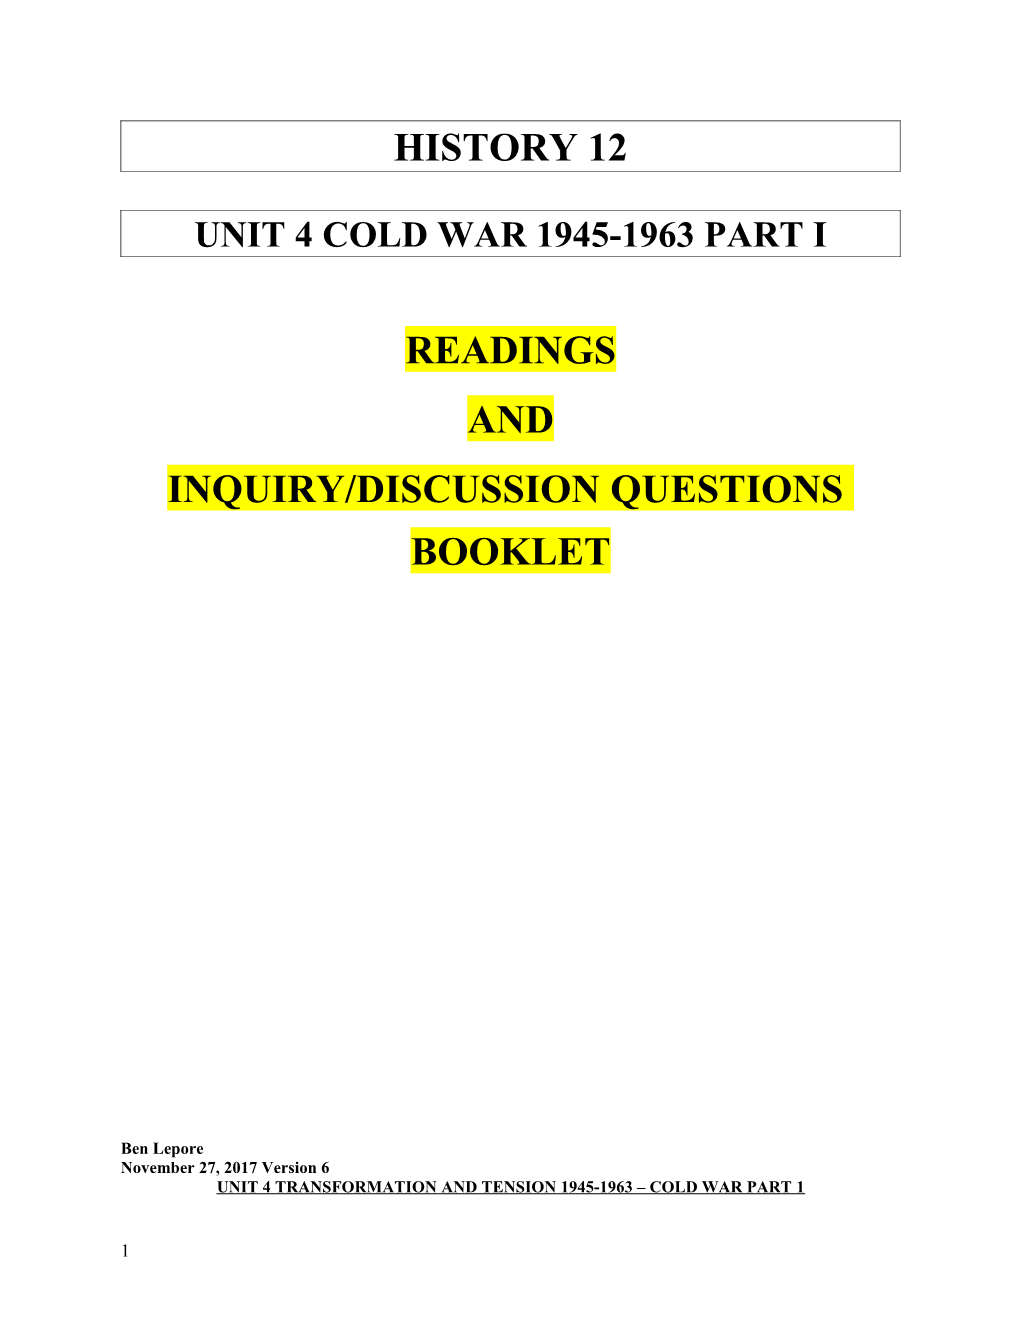 Unit 4 Cold War 1945-1963 Part I